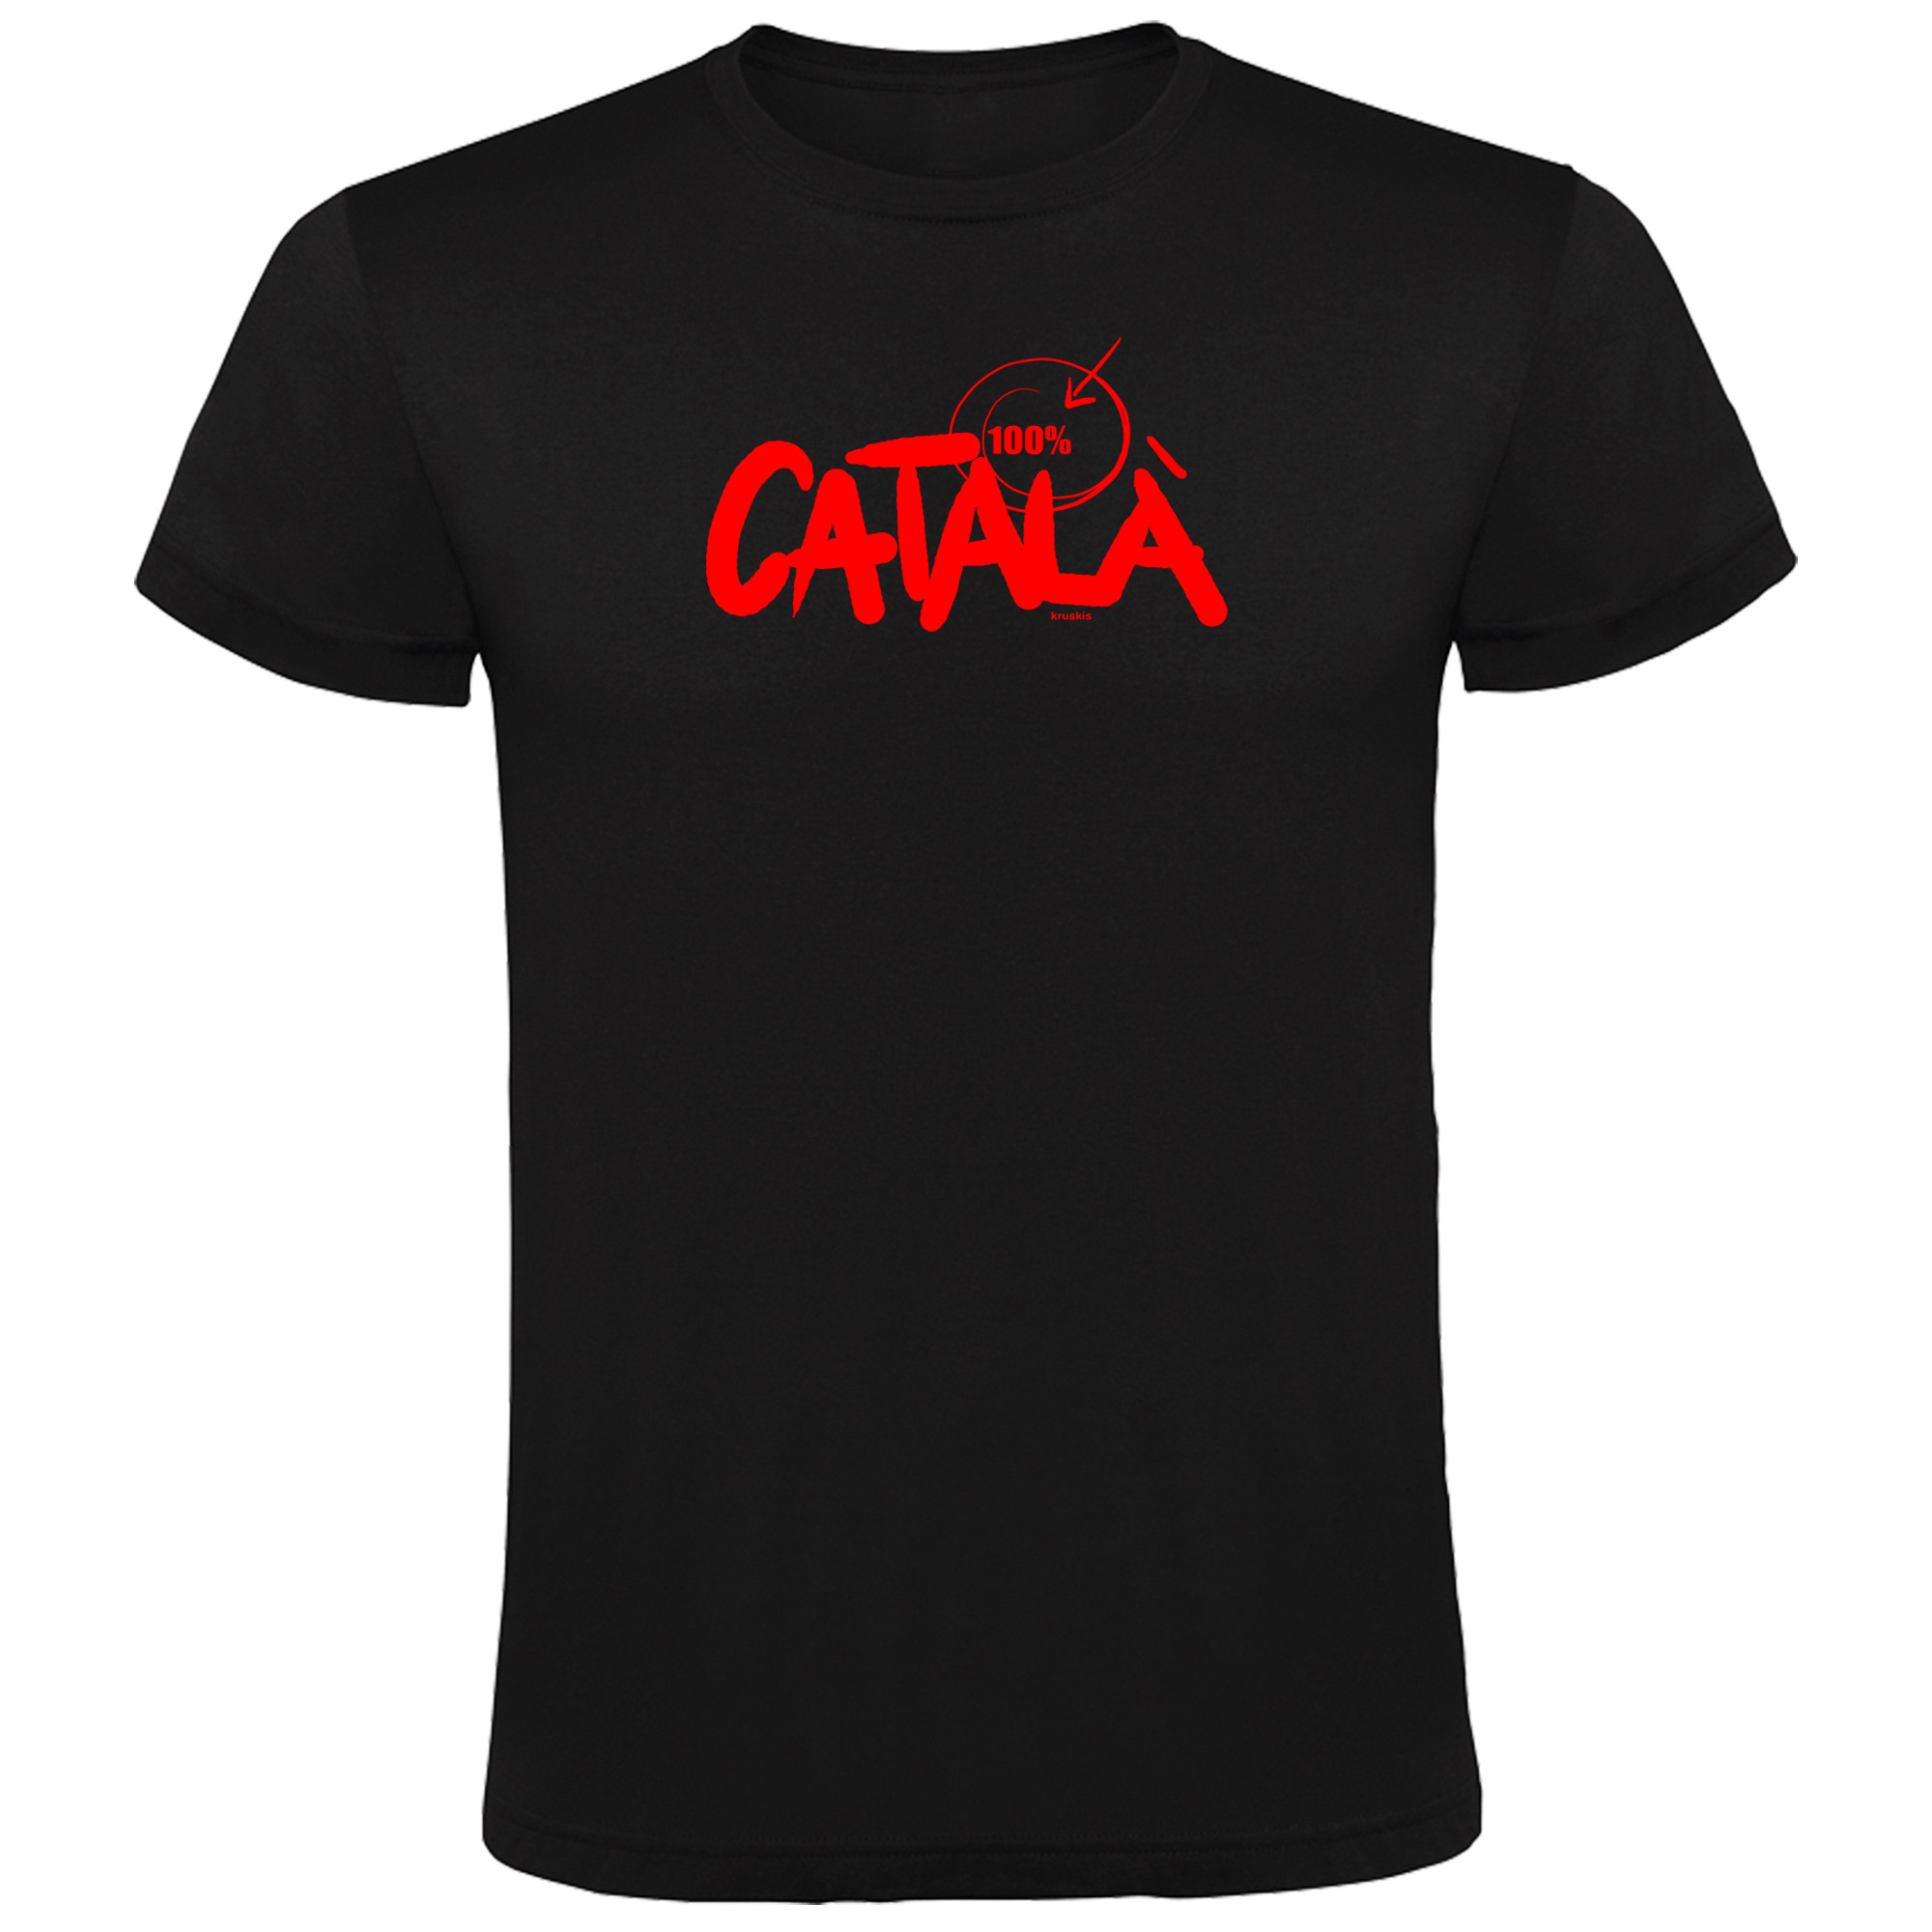 T Shirt Catalogne 100% Catala Manche Courte Homme